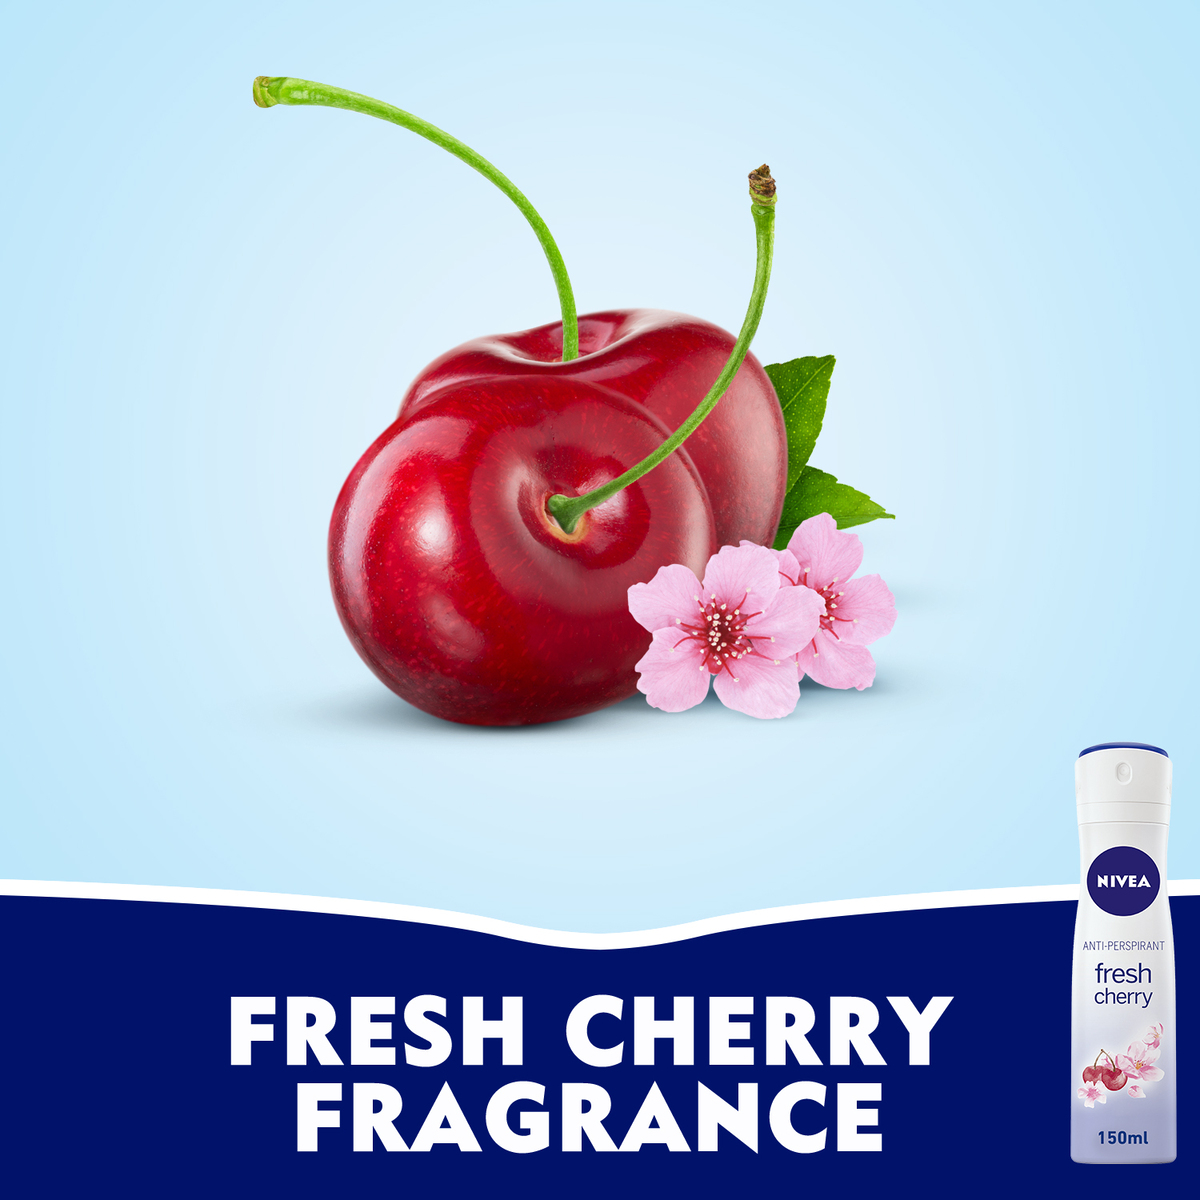 Nivea Antiperspirant Deo for Women Spray Fresh Cherry, 150 ml